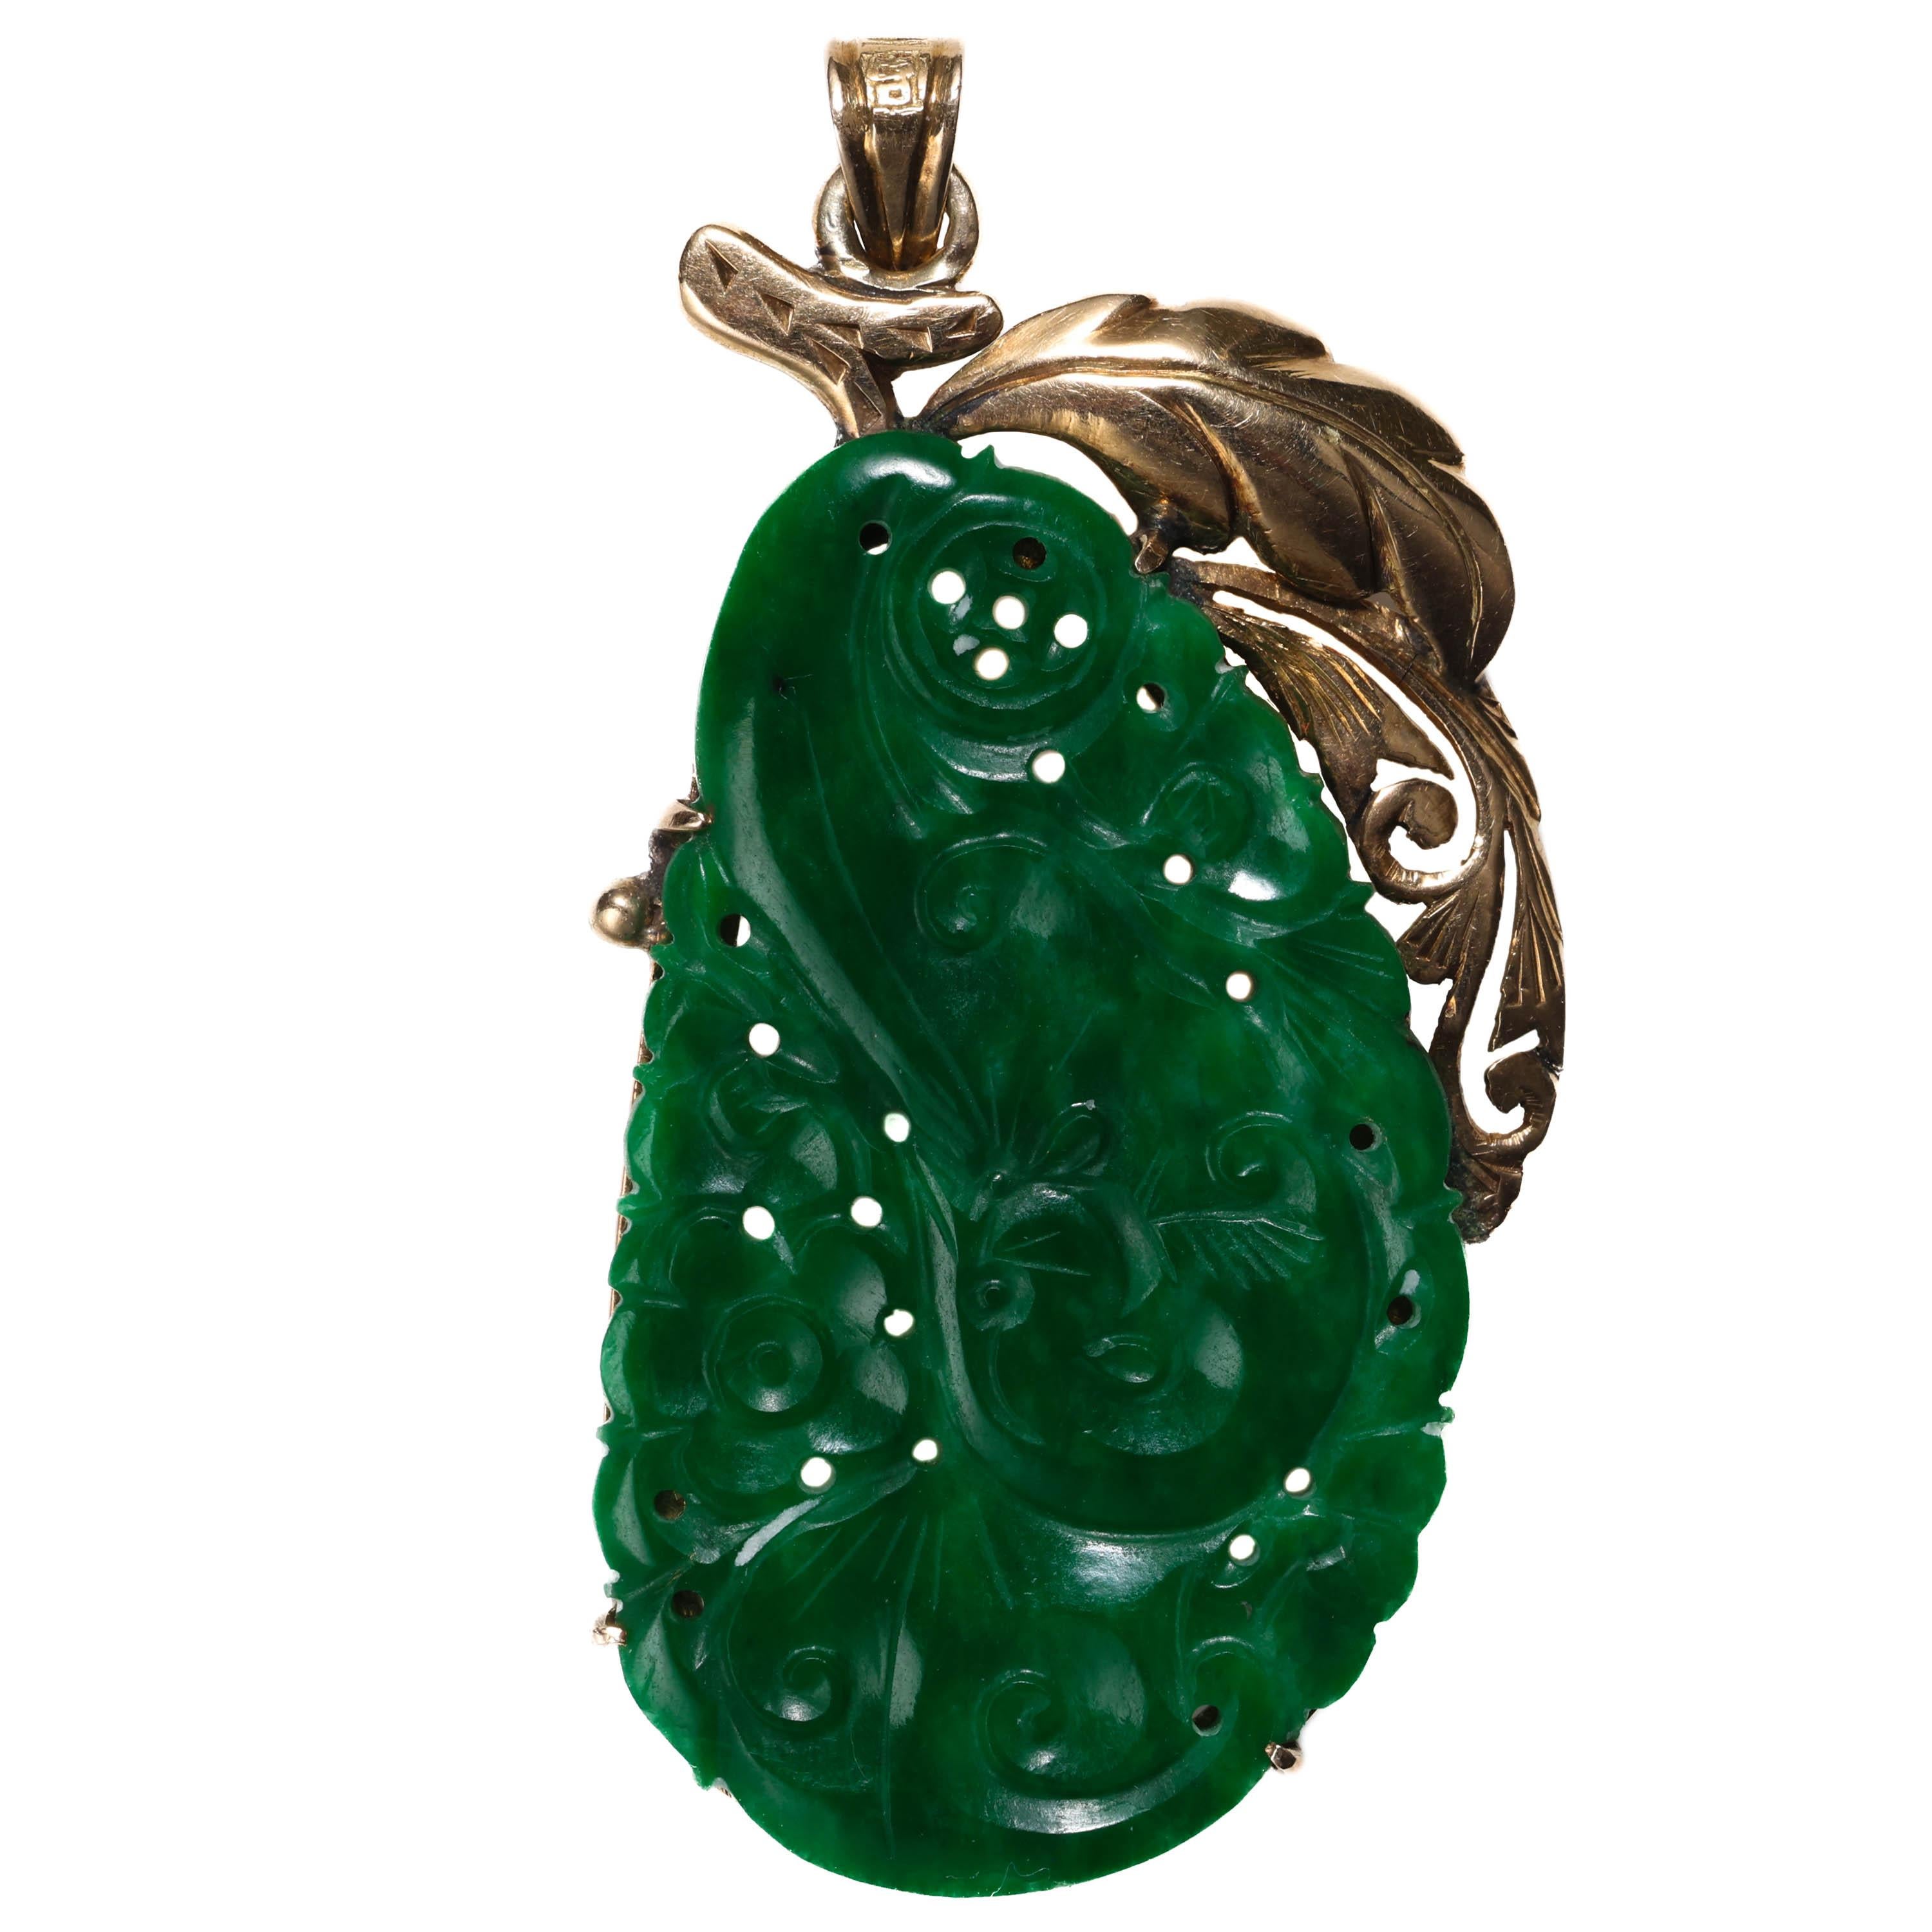 La sculpture de jade que vous voyez ici n'est pas une sculpture de jade ordinaire. Il s'agit d'une variété de jade connue sous le nom de jade kosmochlore. Qu'est-ce que le jade kosmochlore ? Elle est également connue sous le nom de jadéite